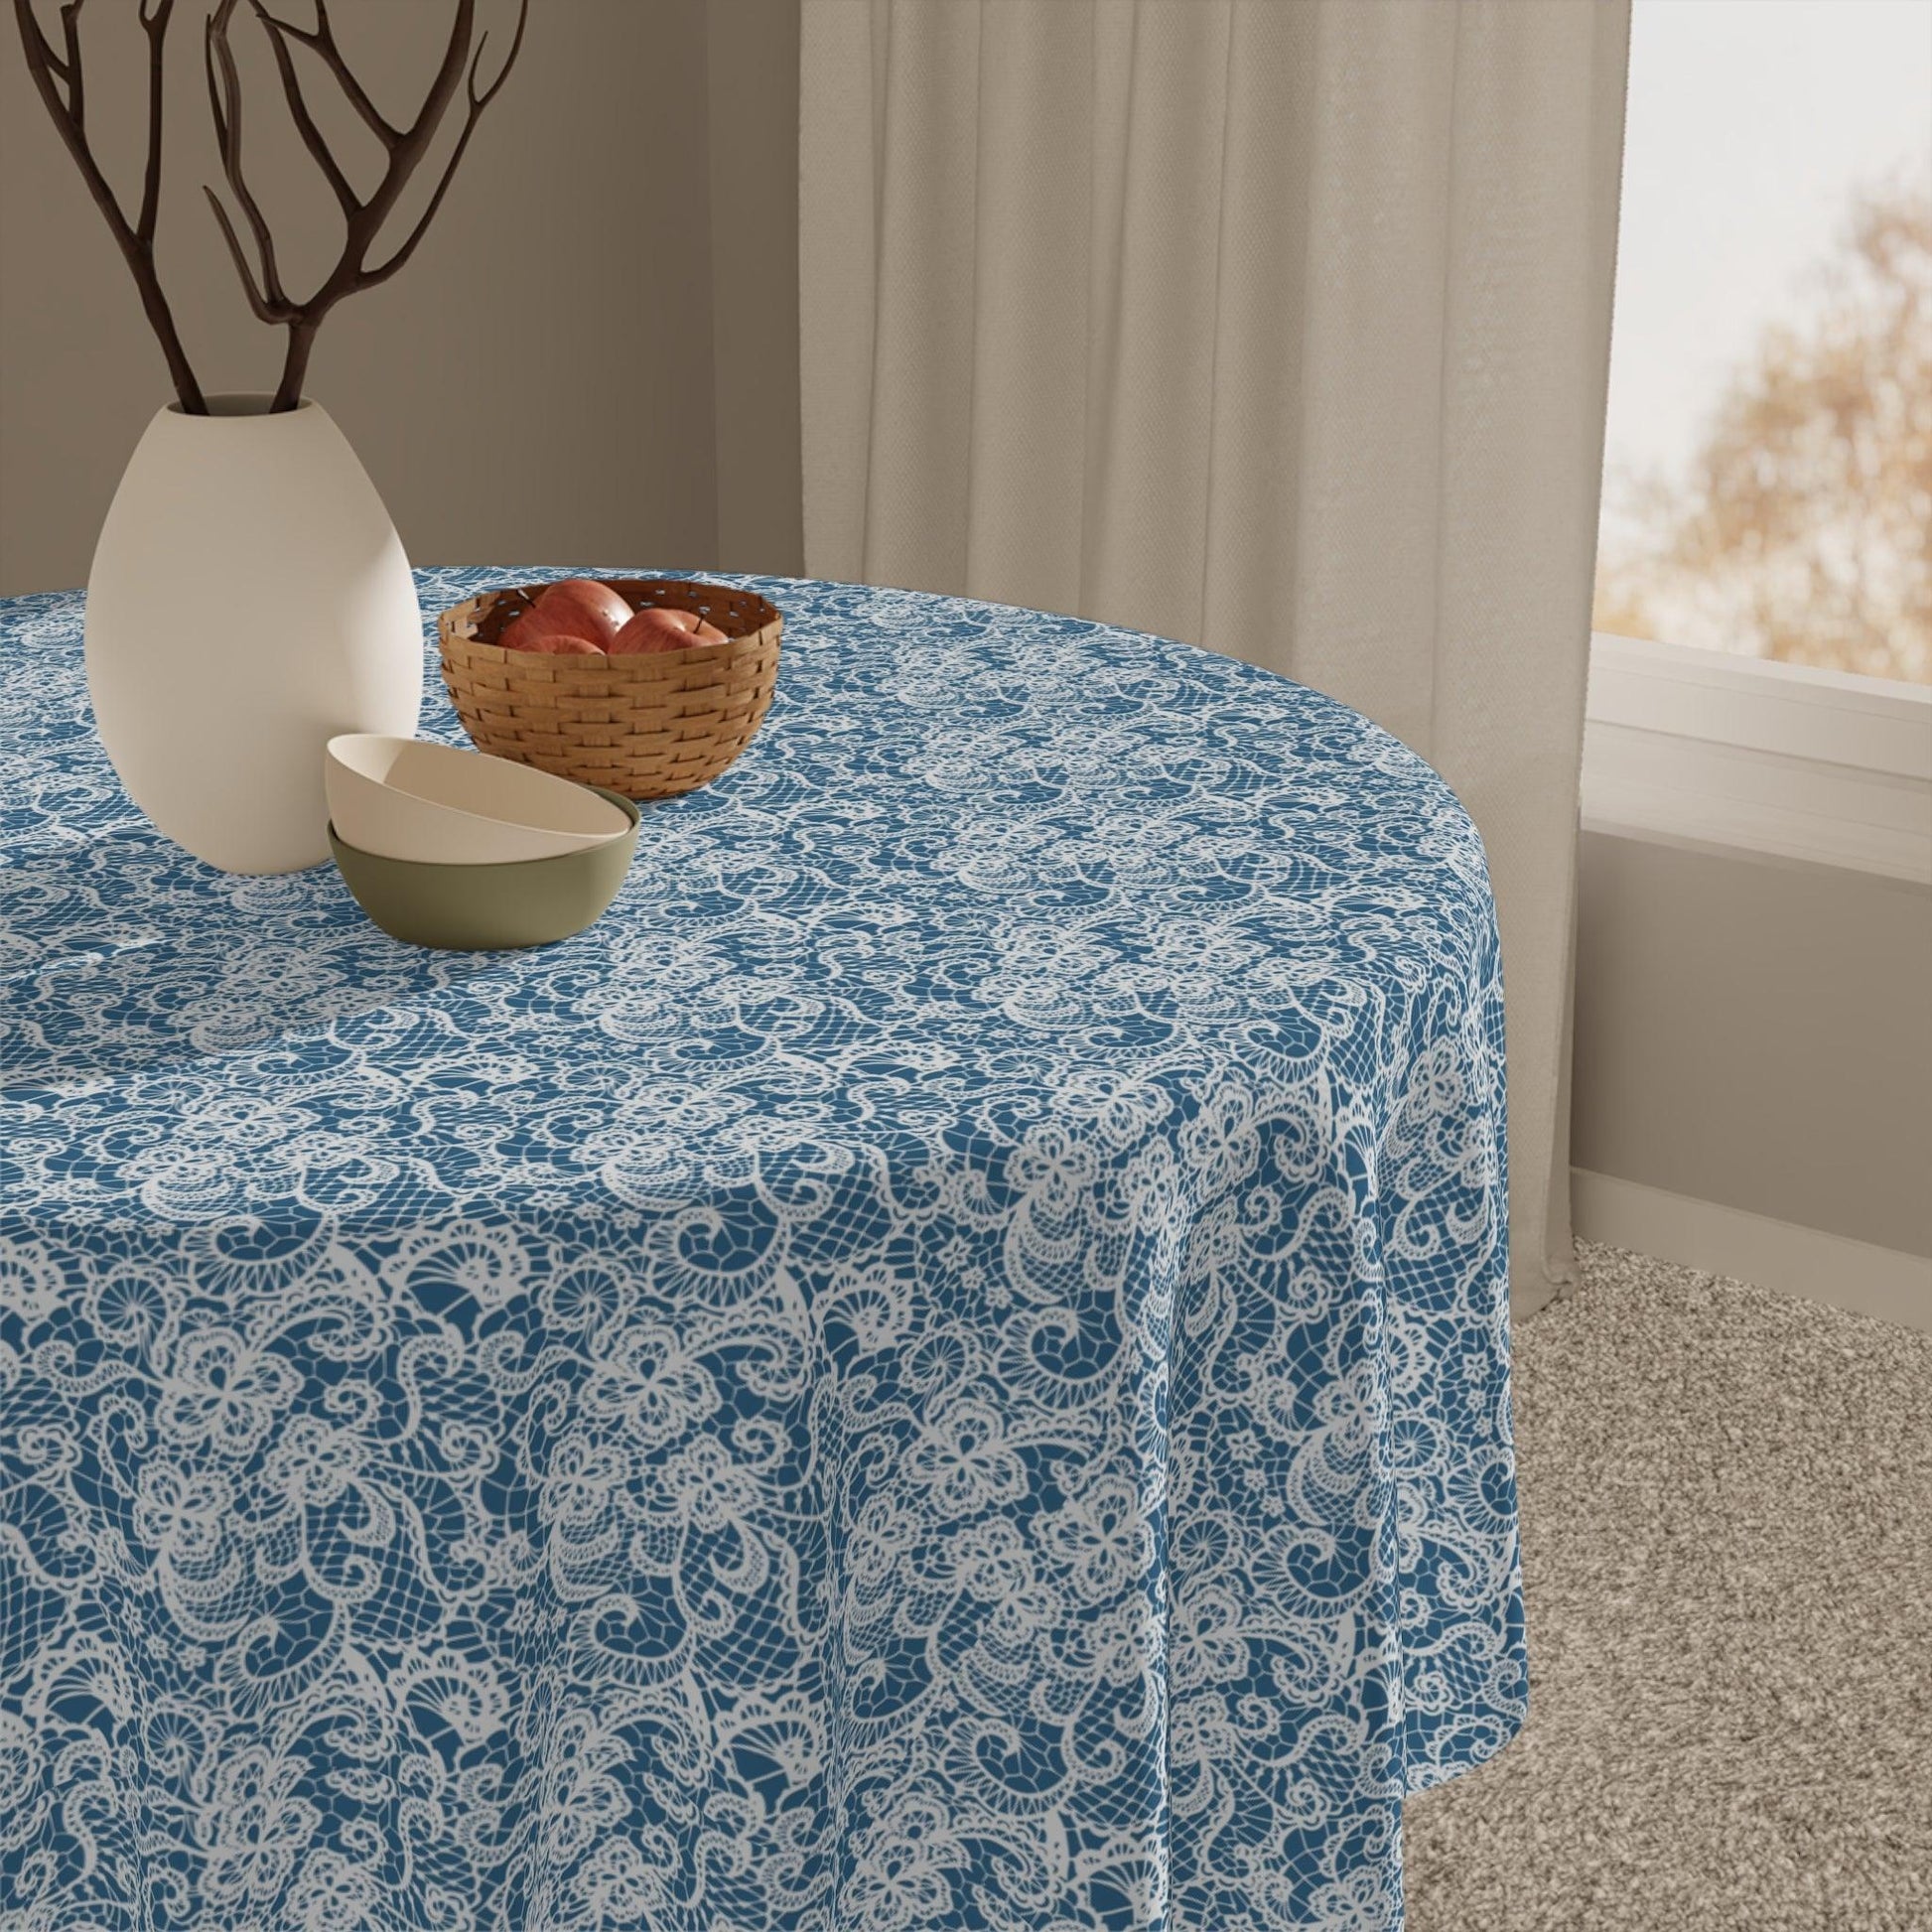 Blue lace Print Tablecloth - Cottage Garden Decor